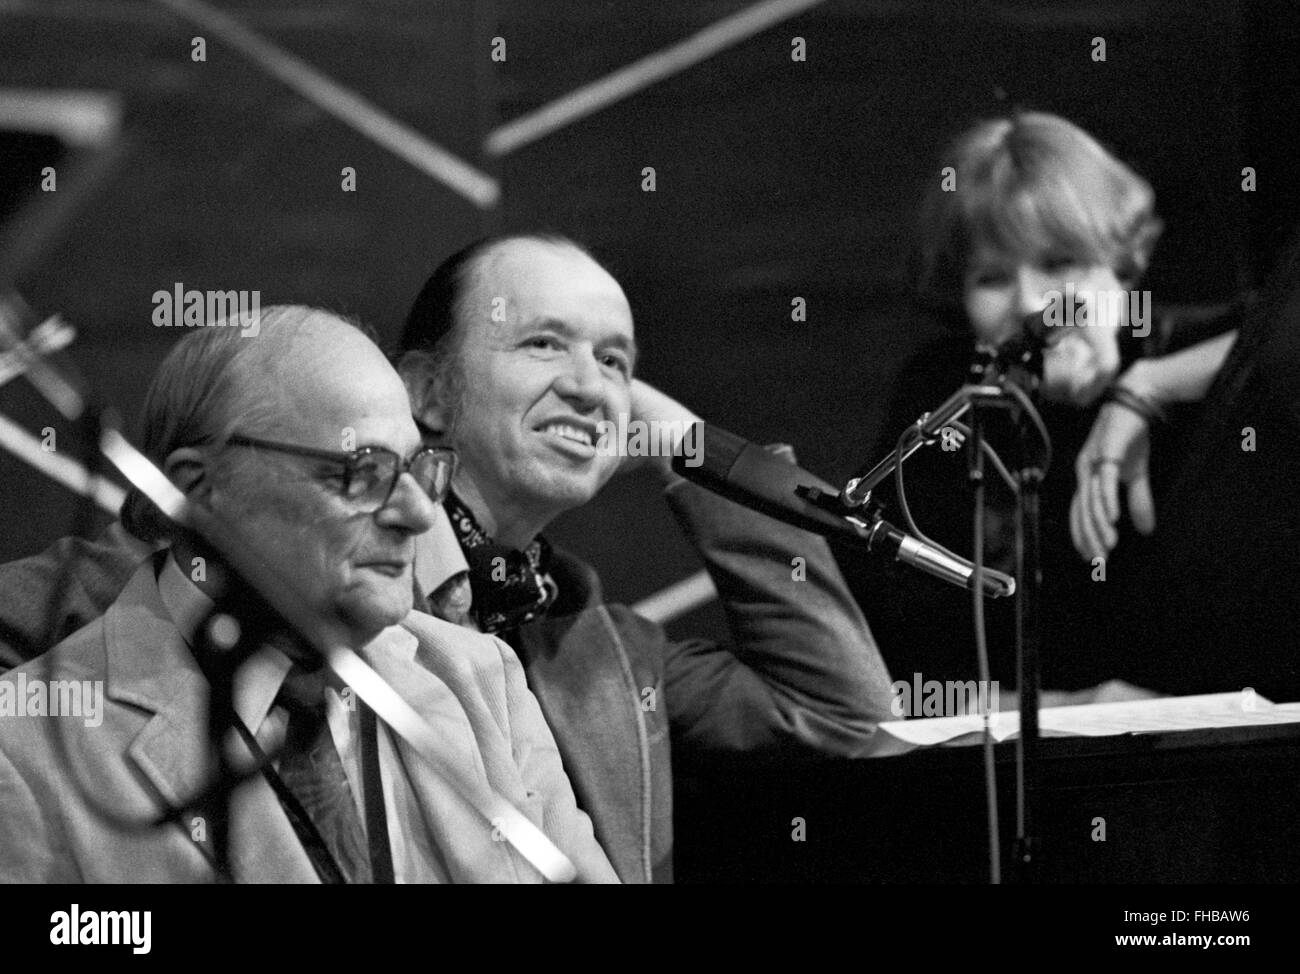 Artie Baker (links) und Bob Dorough während einer Sitzung am Weinberg Theater in New York City, die Barbara Lea am Gesang vorgestellt. Lea ist sichtbar im Hintergrund dieses Foto. Einige der Tracks aus dieser Sitzung wurden in ihrer Hoagy Kinder Alben veröffentlicht. Diese Session war 22. Januar 1984. Stockfoto